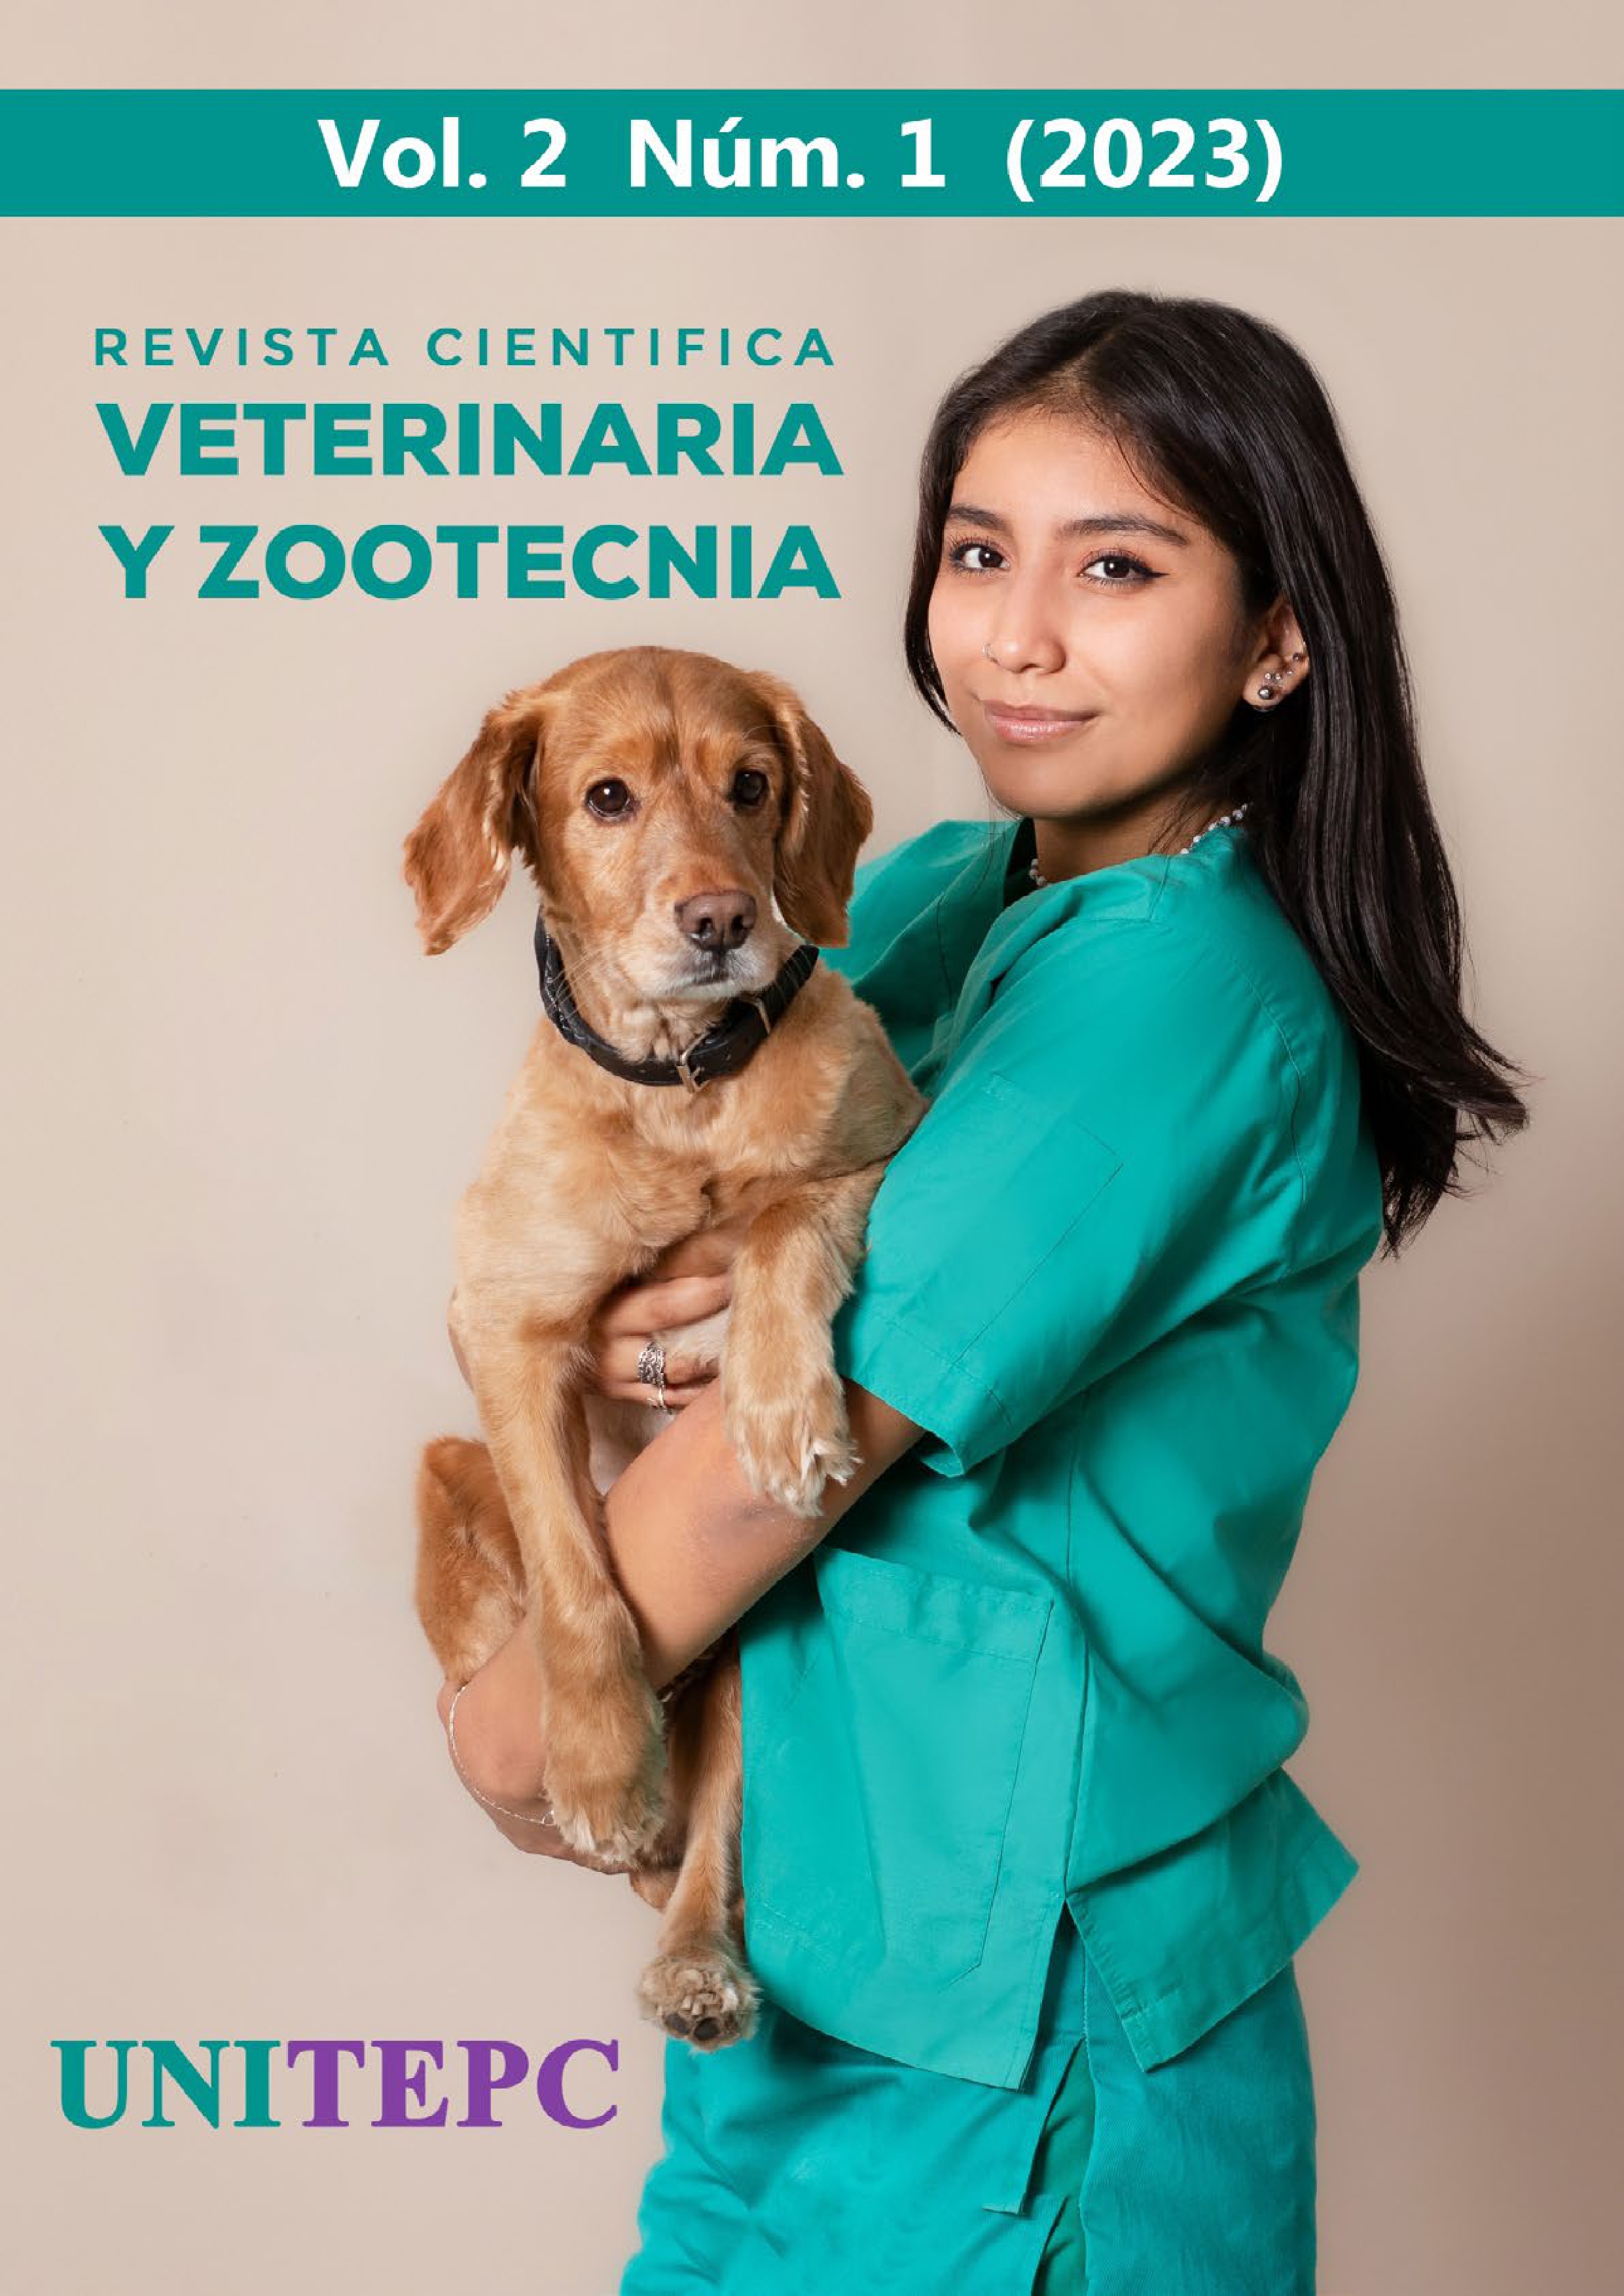 					Ver Vol. 2 Núm. 1 (2023): Revista Científica de Veterinaria y Zootecnia UNITEPC
				